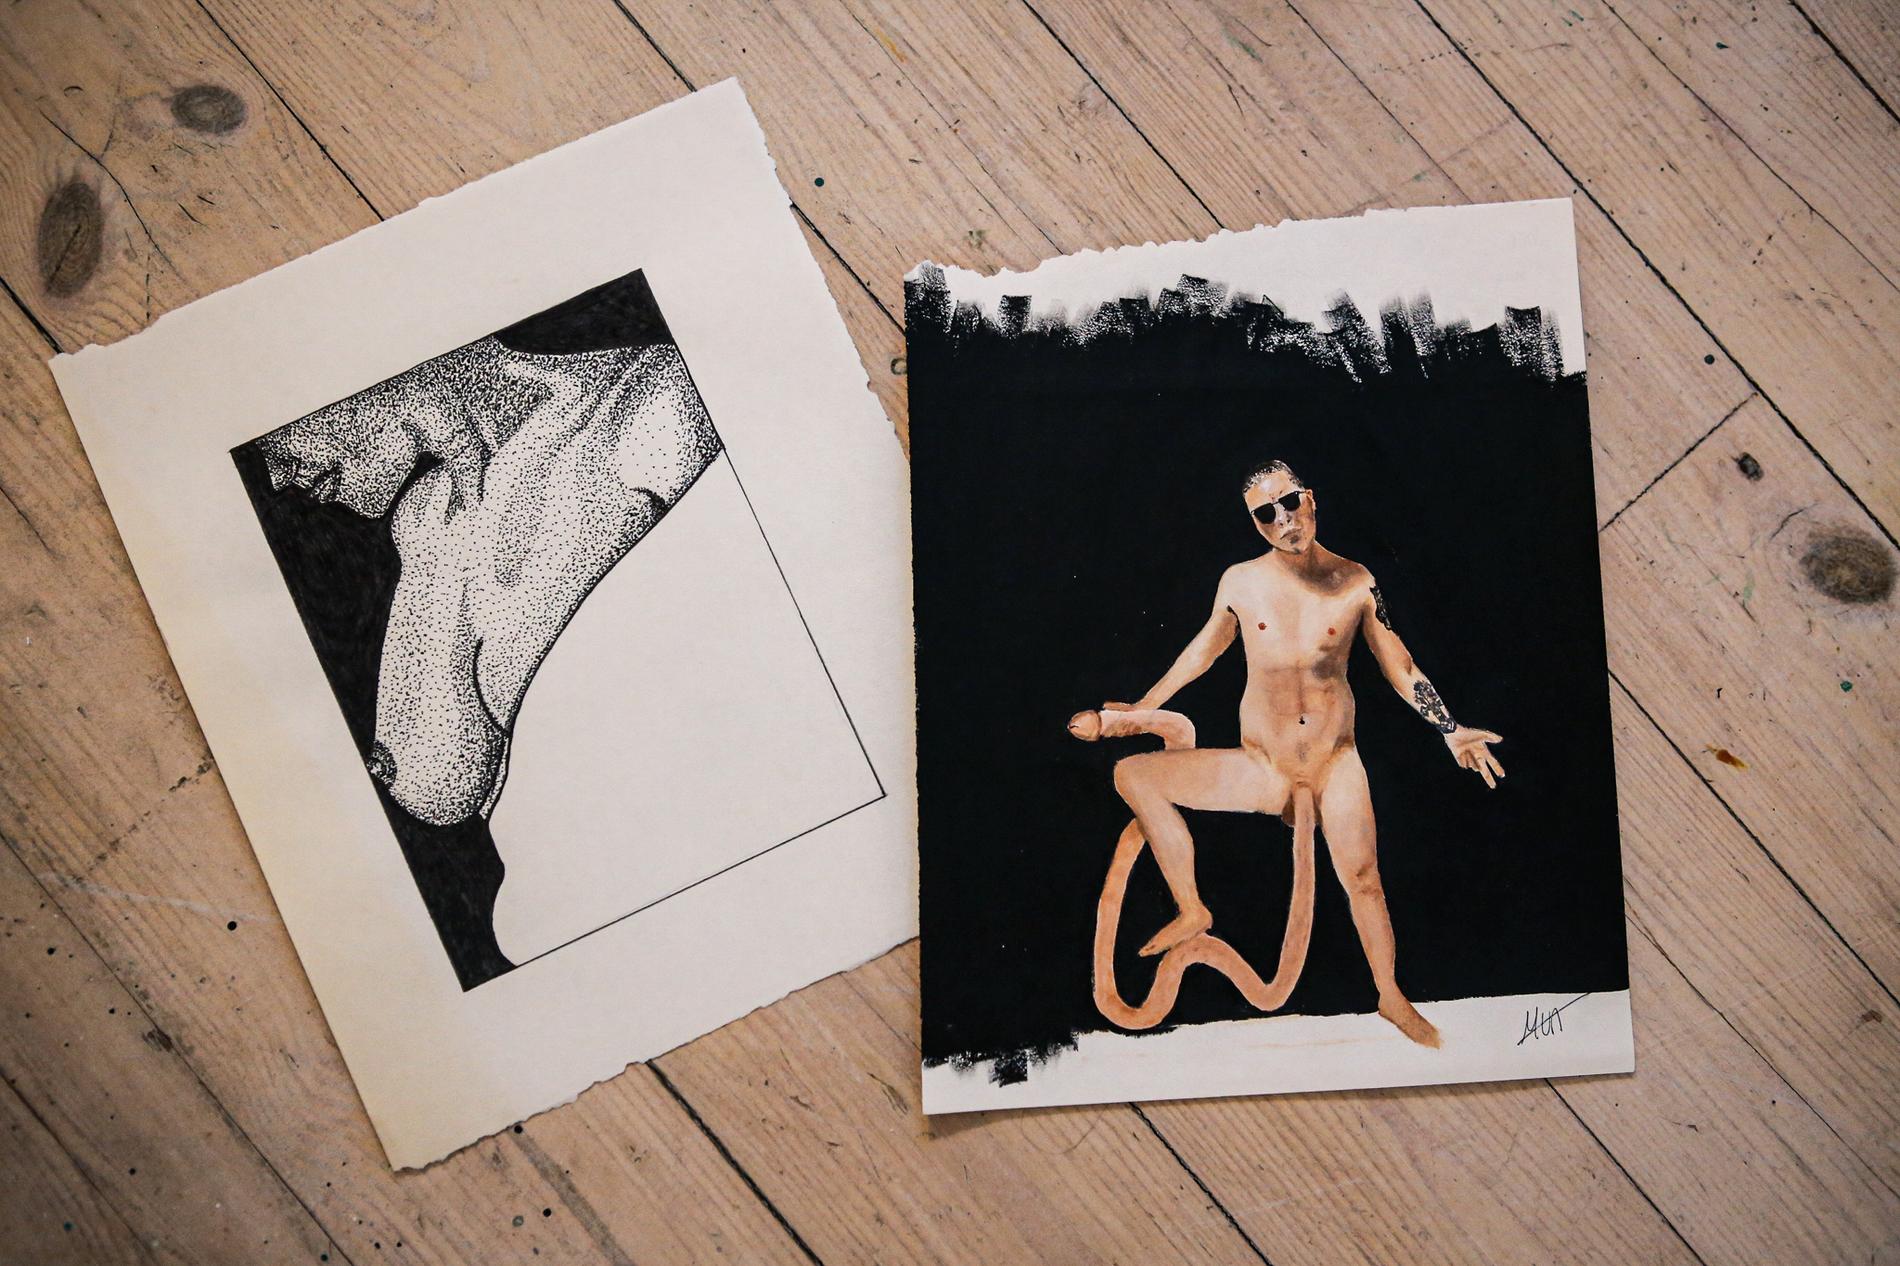 Kropp og seksualitet er en rød tråd hos den unge kunstneren: Maleriet til høyre er en av de sjeldne forespørslene Marte får, som å male en kunde med overdrevent kjønnsorgan. Bildet til venstre er en del av prosjektet og er sendt inn anonymt fra en Instagram-bruker.